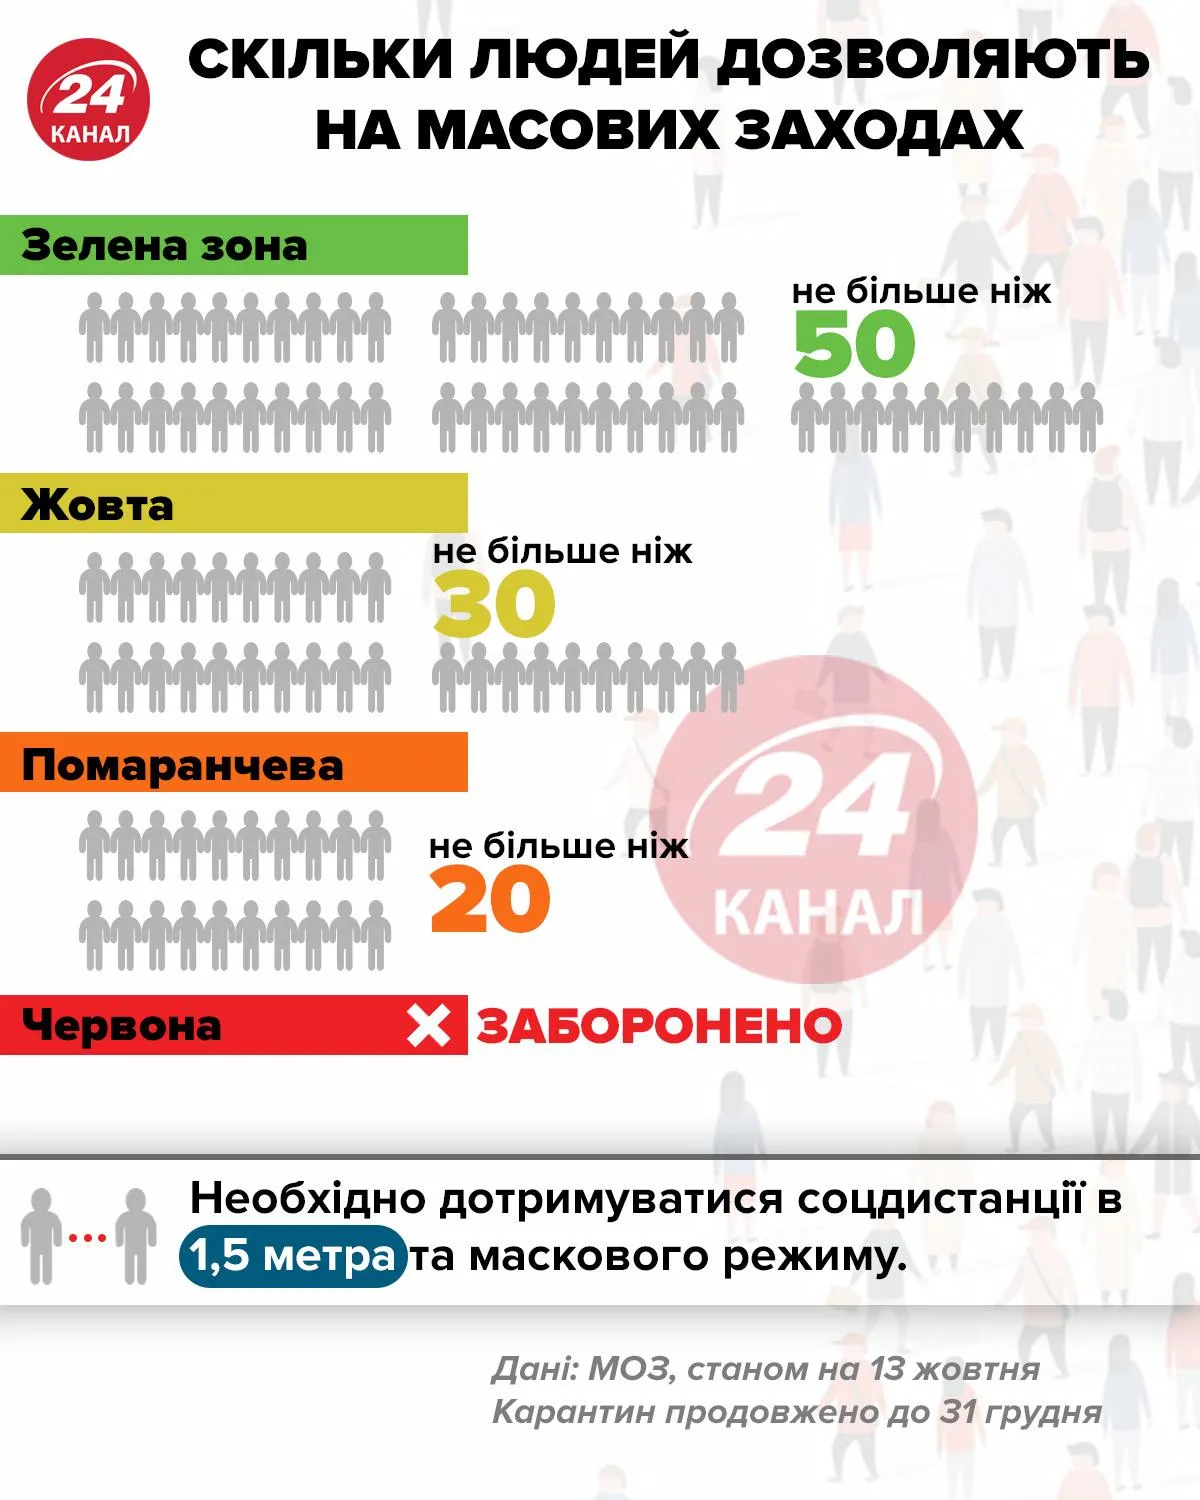 Кількість людей на масових заходах інфографіка 24 канал